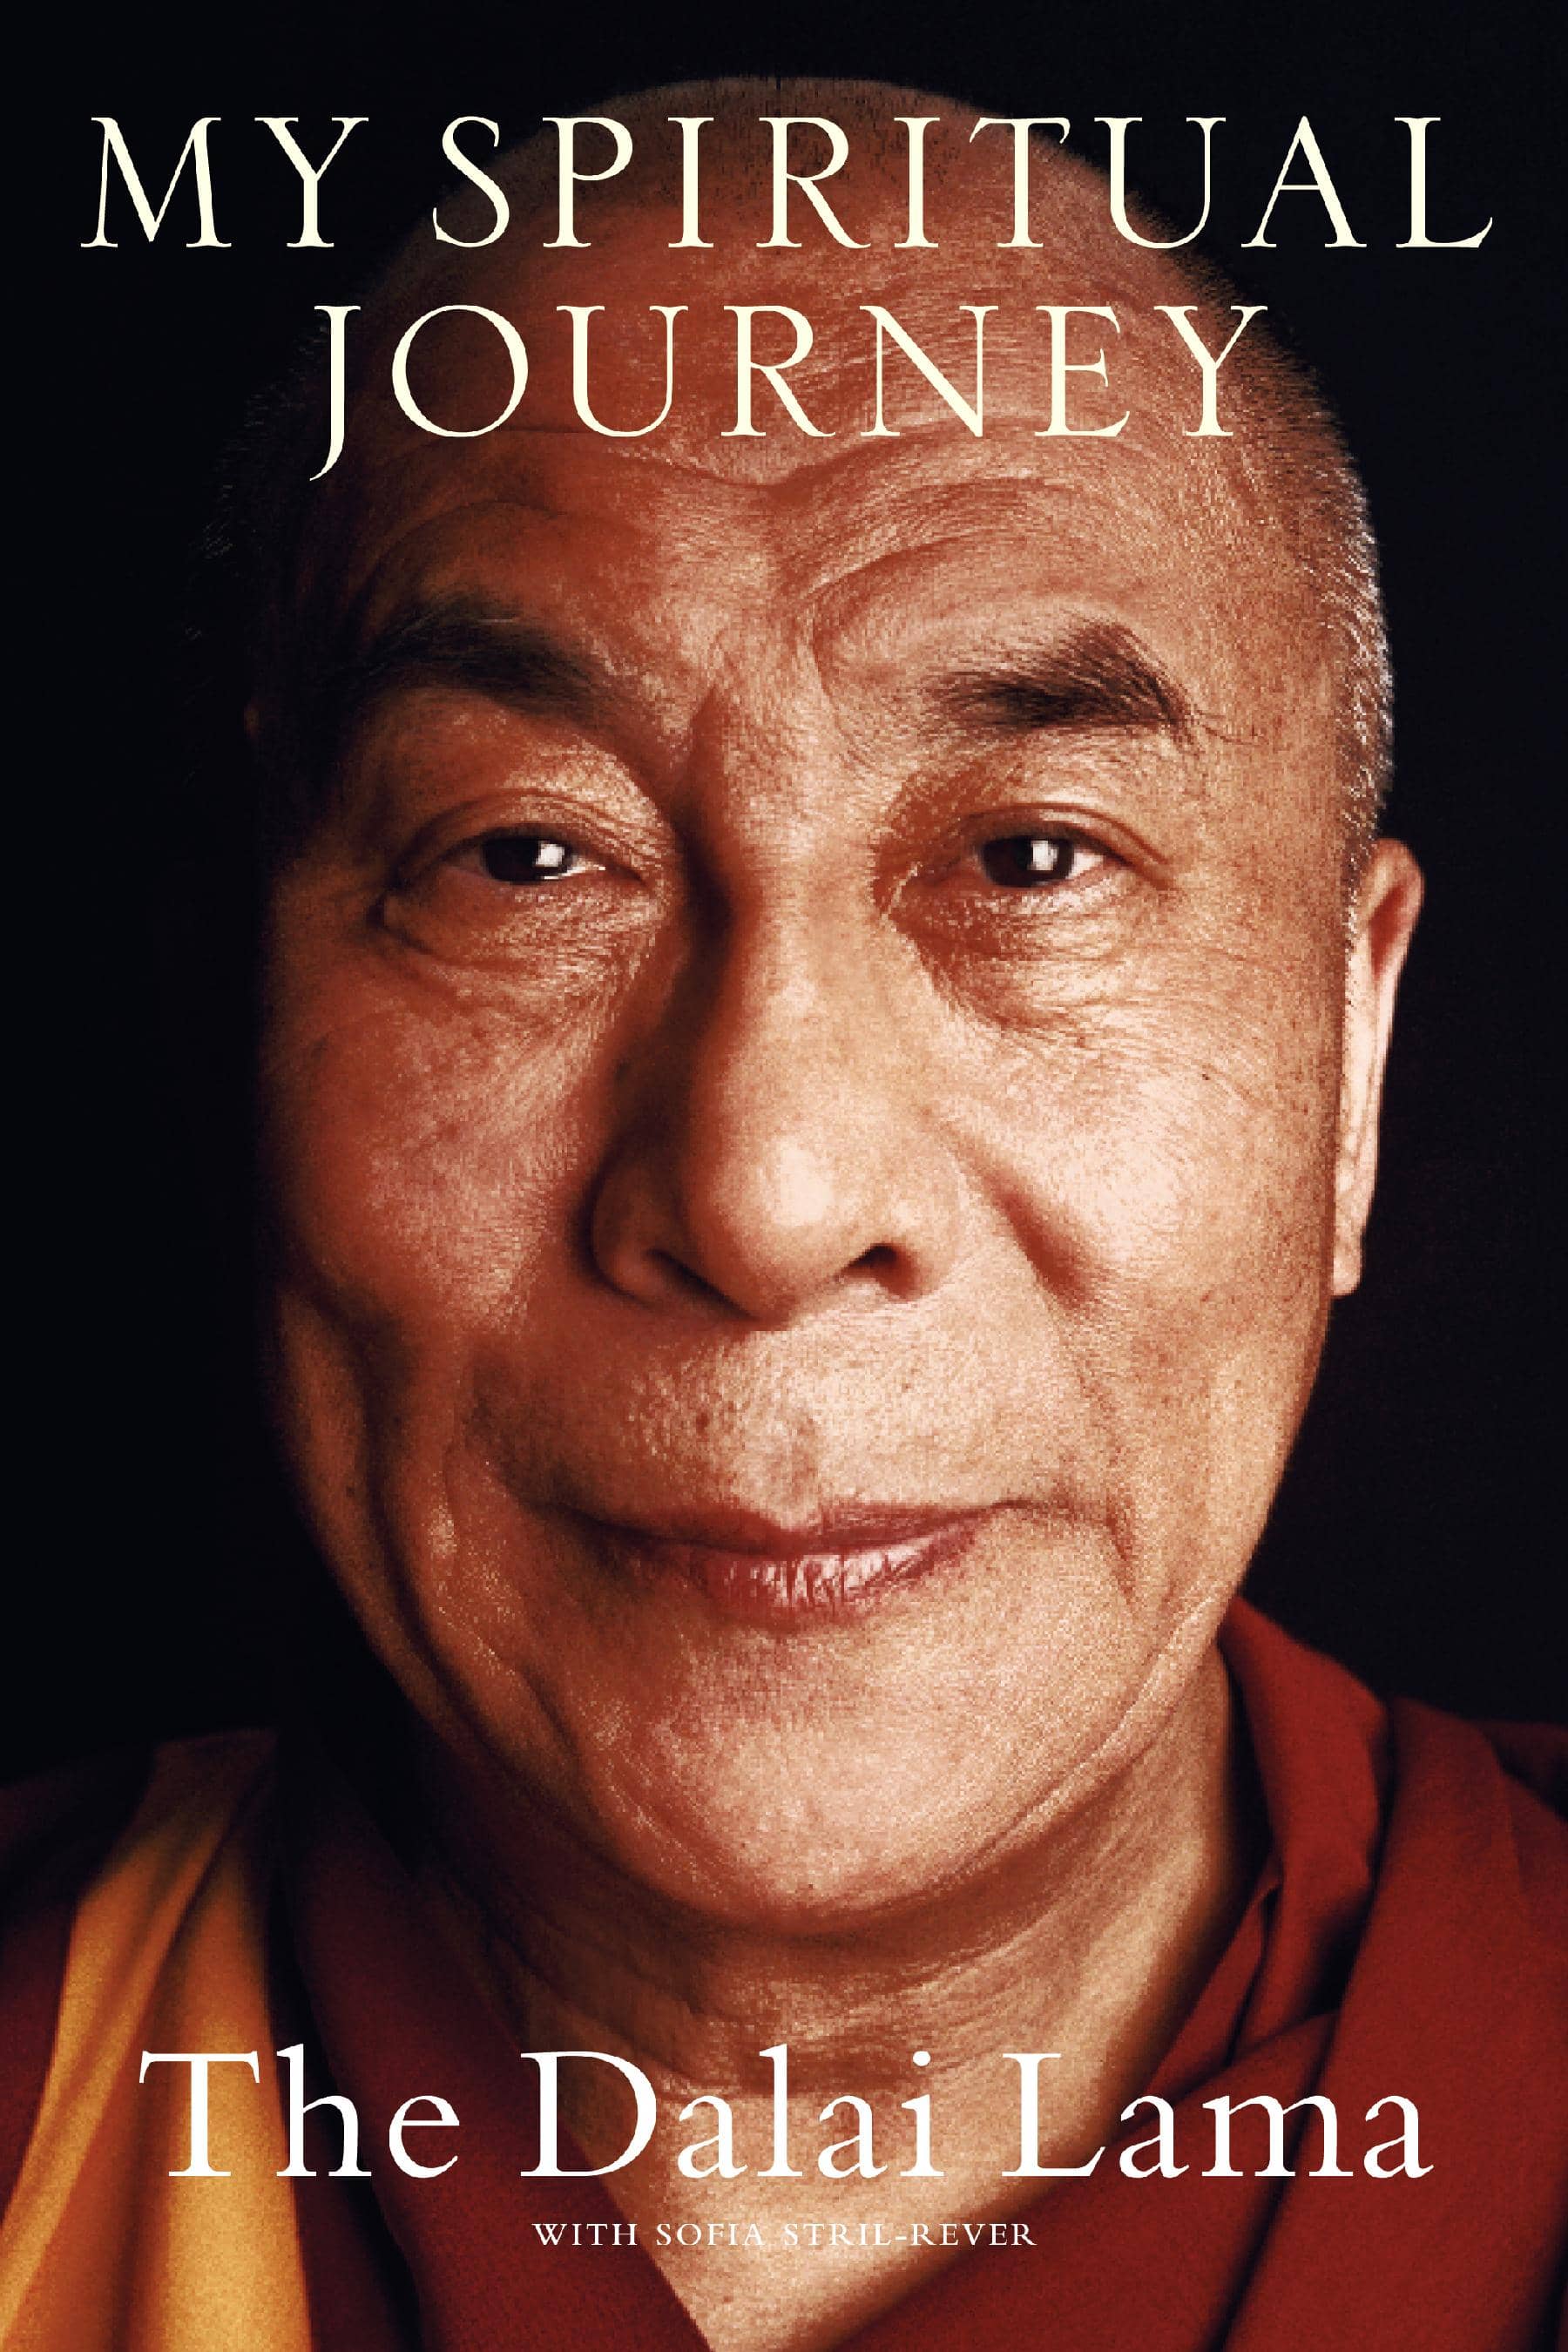 Dalai Lama - Beliefnet.com